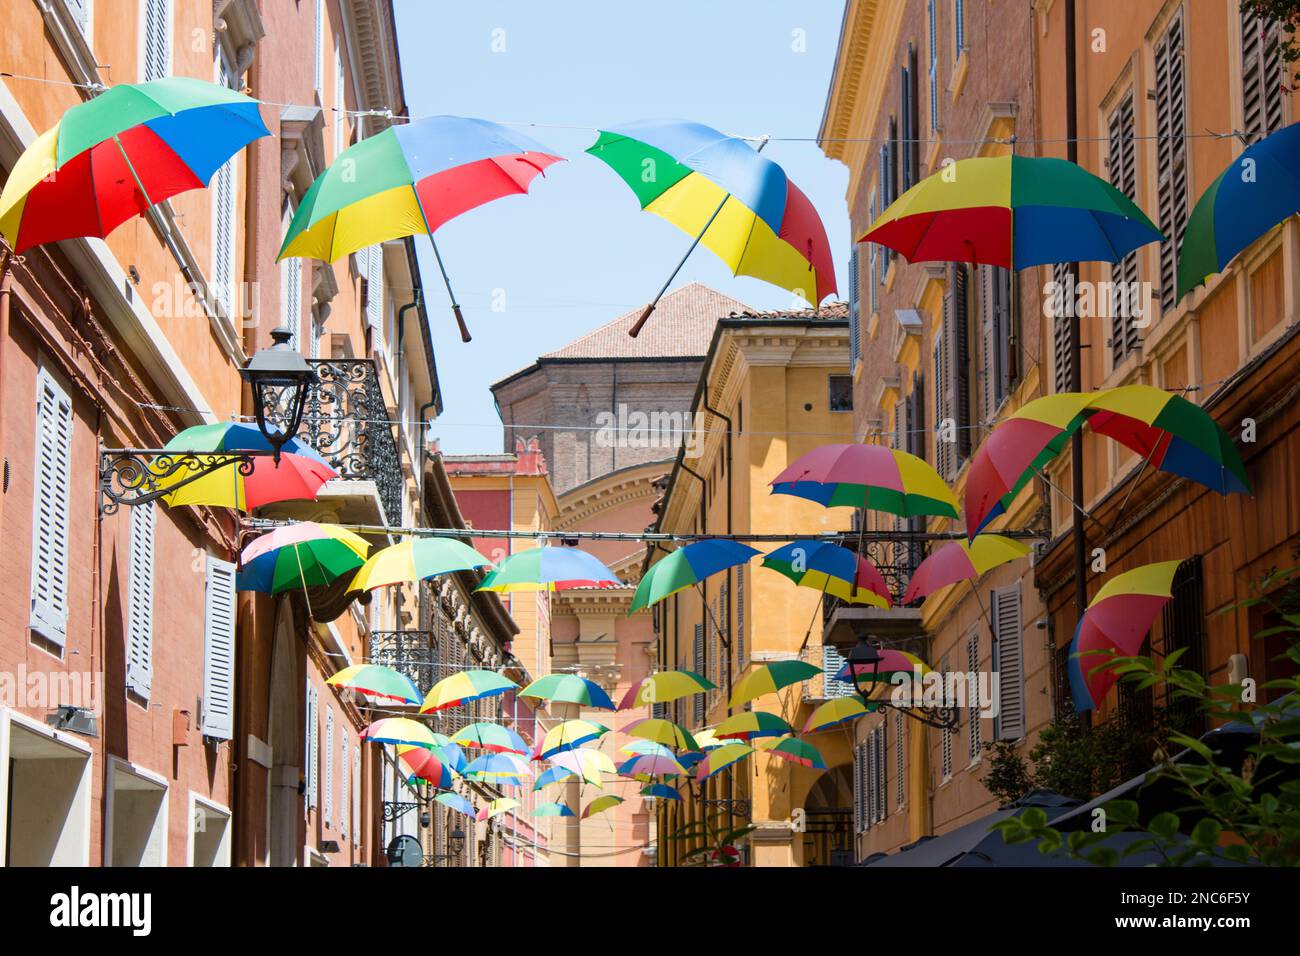 Una via di Modena coperta da file di ombrelli colorati - A street in Modena covered by rows of colored umbrellas Stock Photo